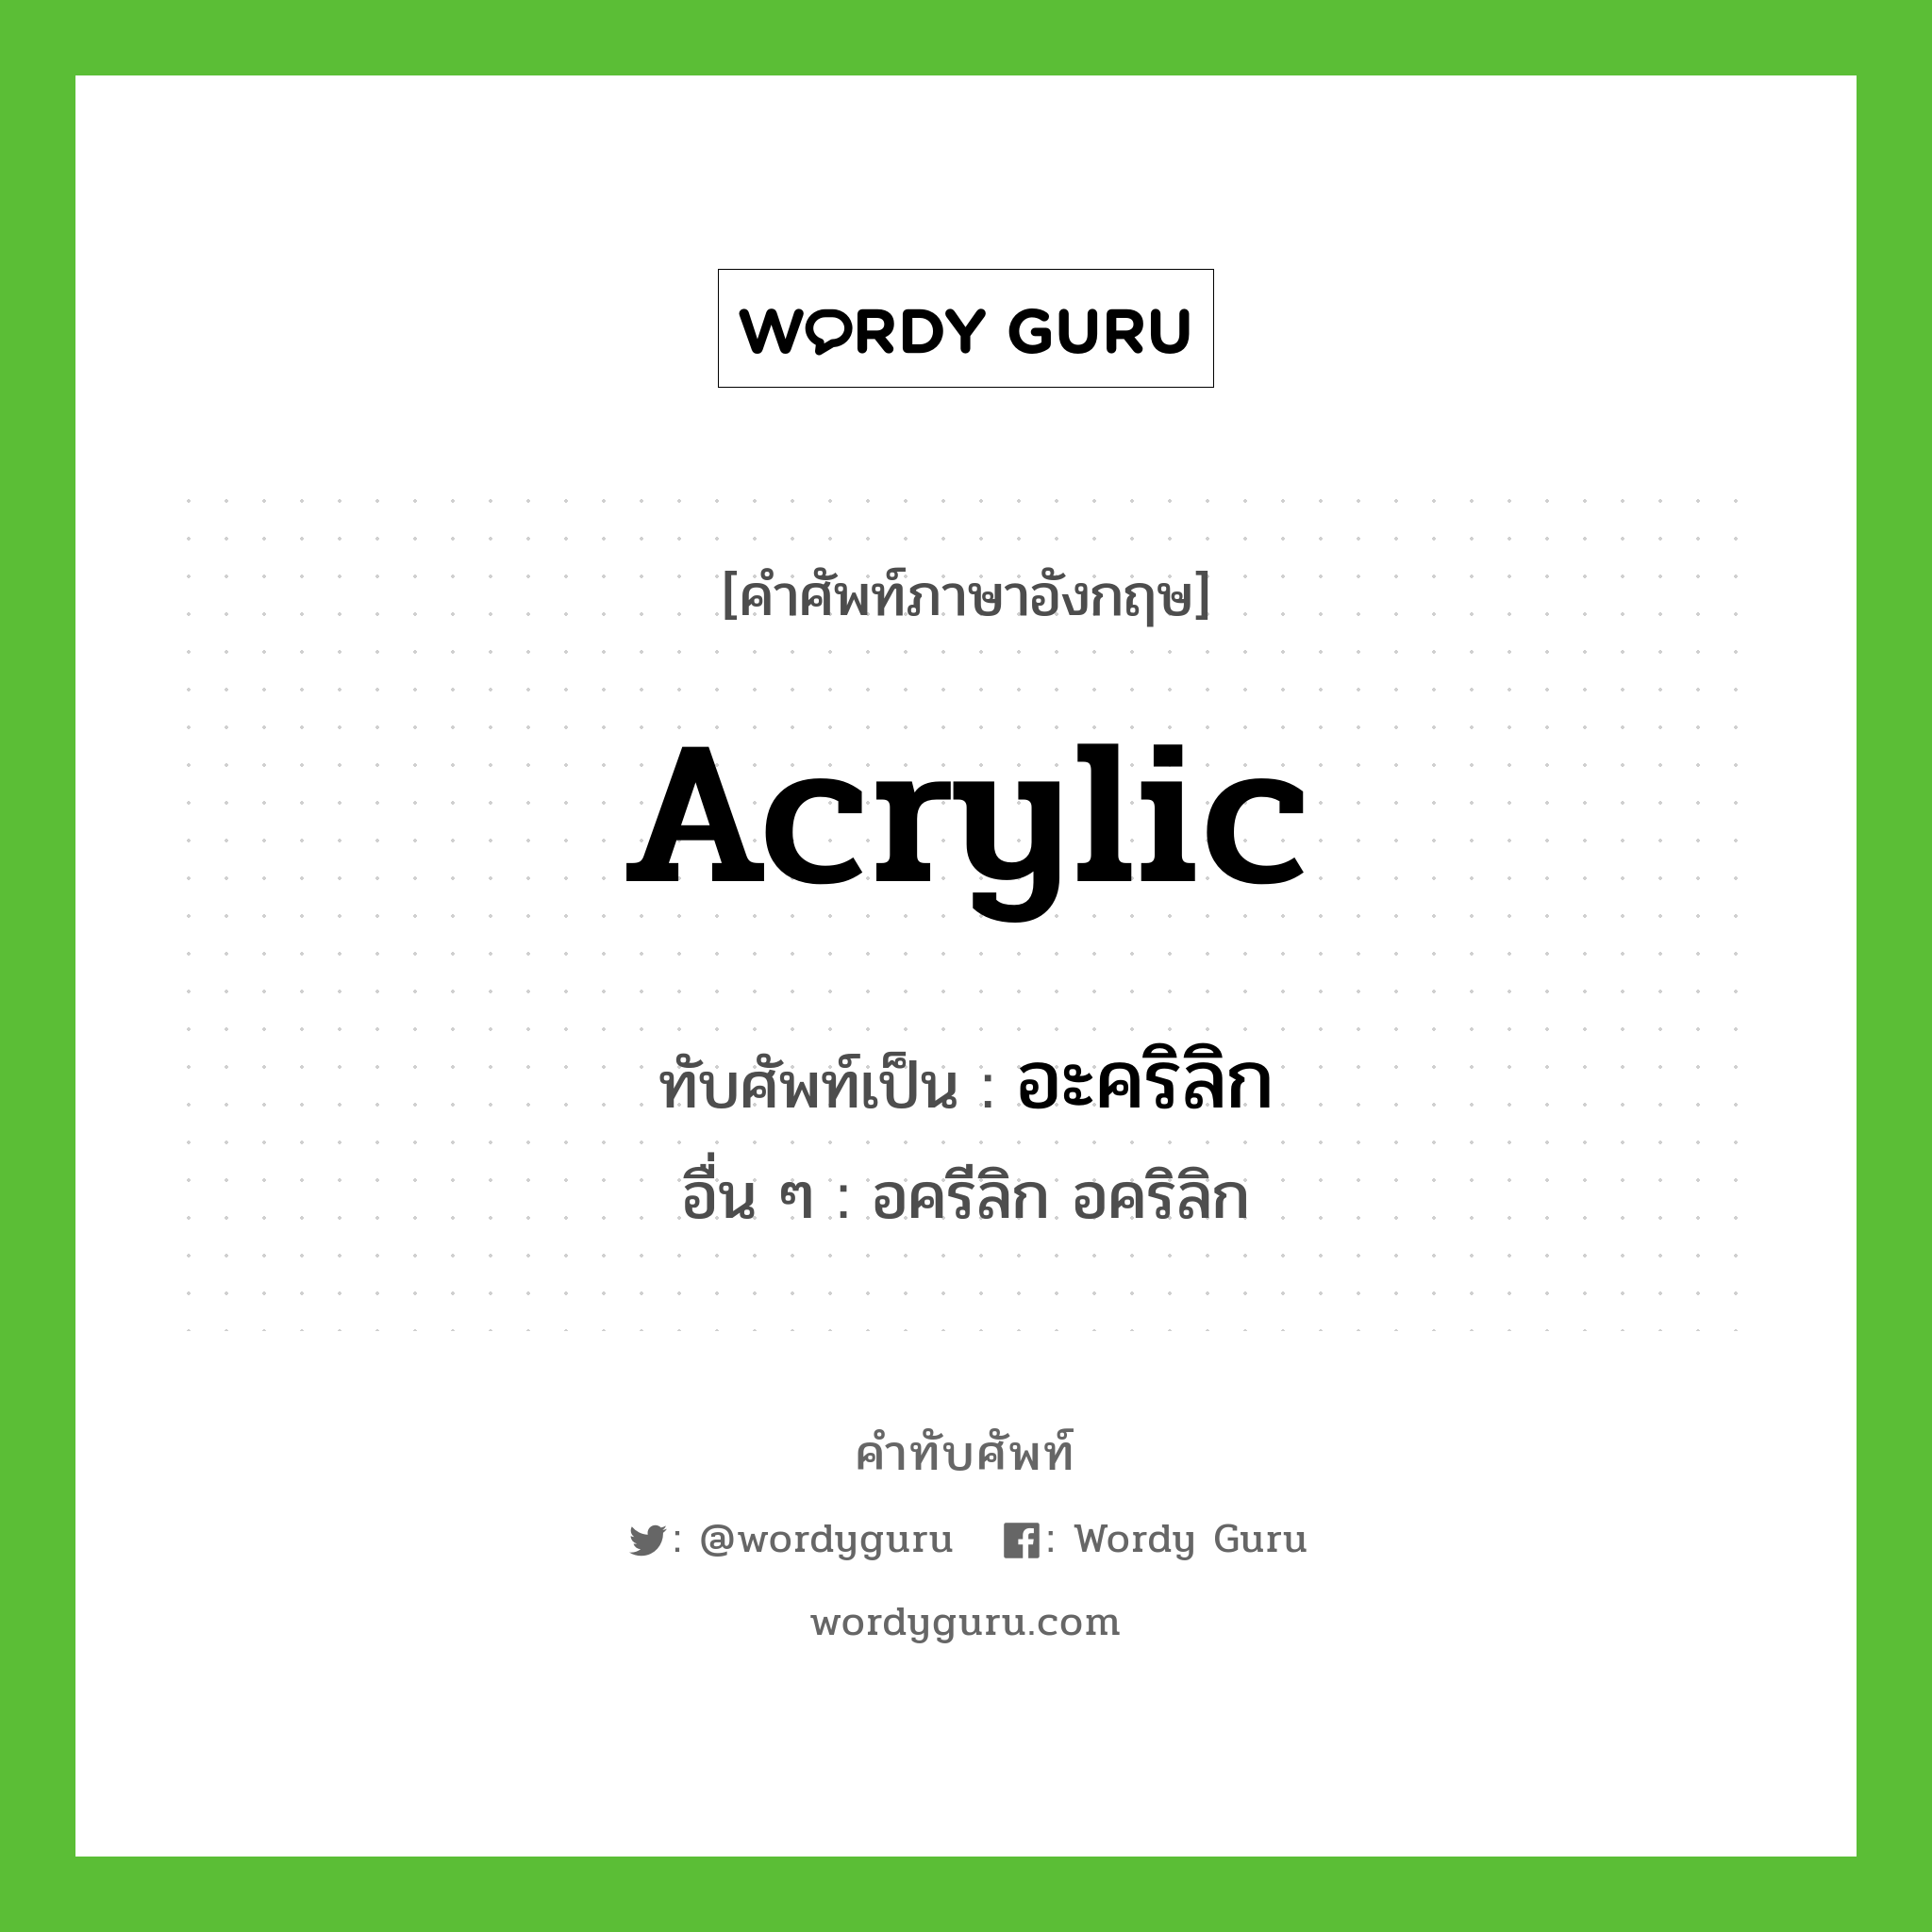 acrylic เขียนเป็นคำไทยว่าอะไร?, คำศัพท์ภาษาอังกฤษ acrylic ทับศัพท์เป็น อะคริลิก อื่น ๆ อครีลิก อคริลิก